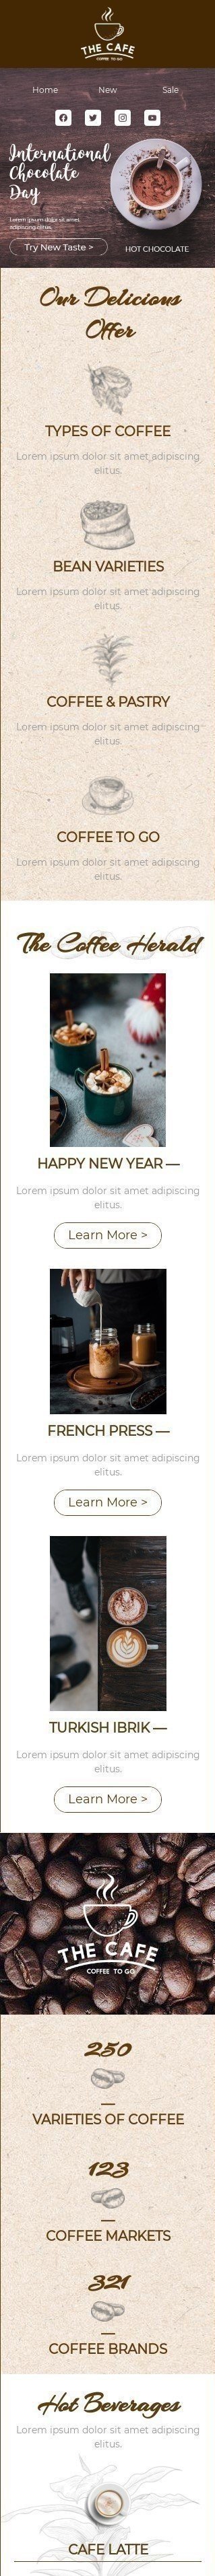 Der internationale Tag der Schokolade E-Mail-Vorlage «Probieren Sie einen neuen Geschmack» für Getränke-Branche Ansicht auf Mobilgeräten